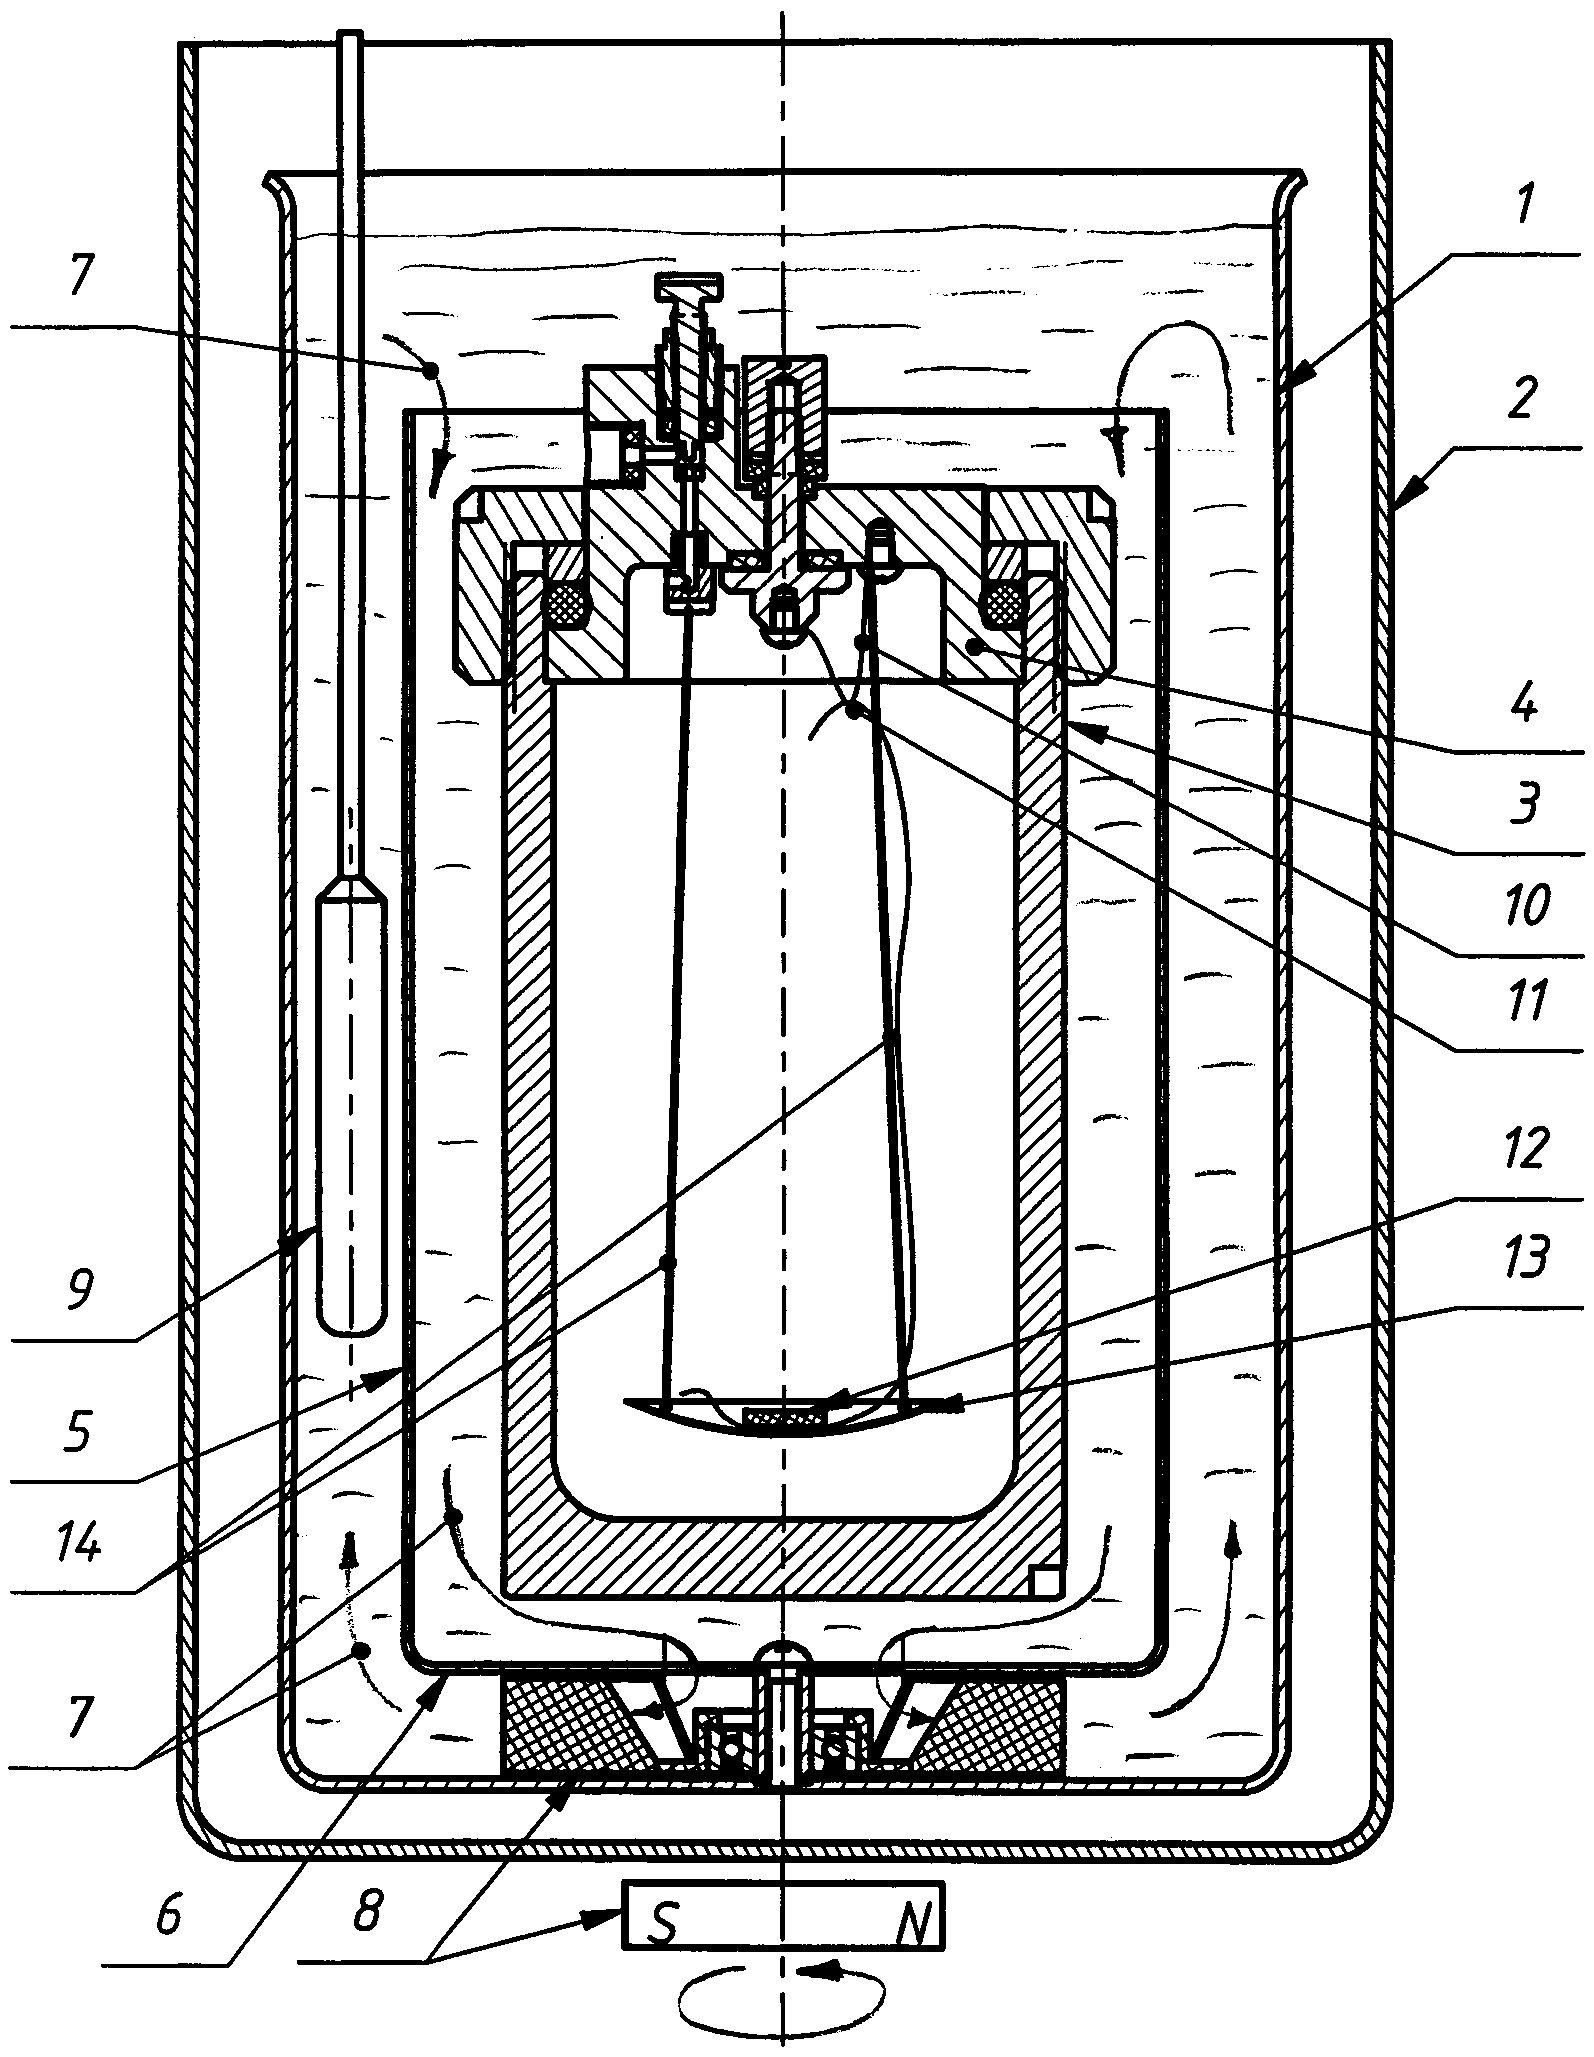 Бомбовый калориметр переменной температуры для определения удельной объемной теплоты сгорания горючего газа